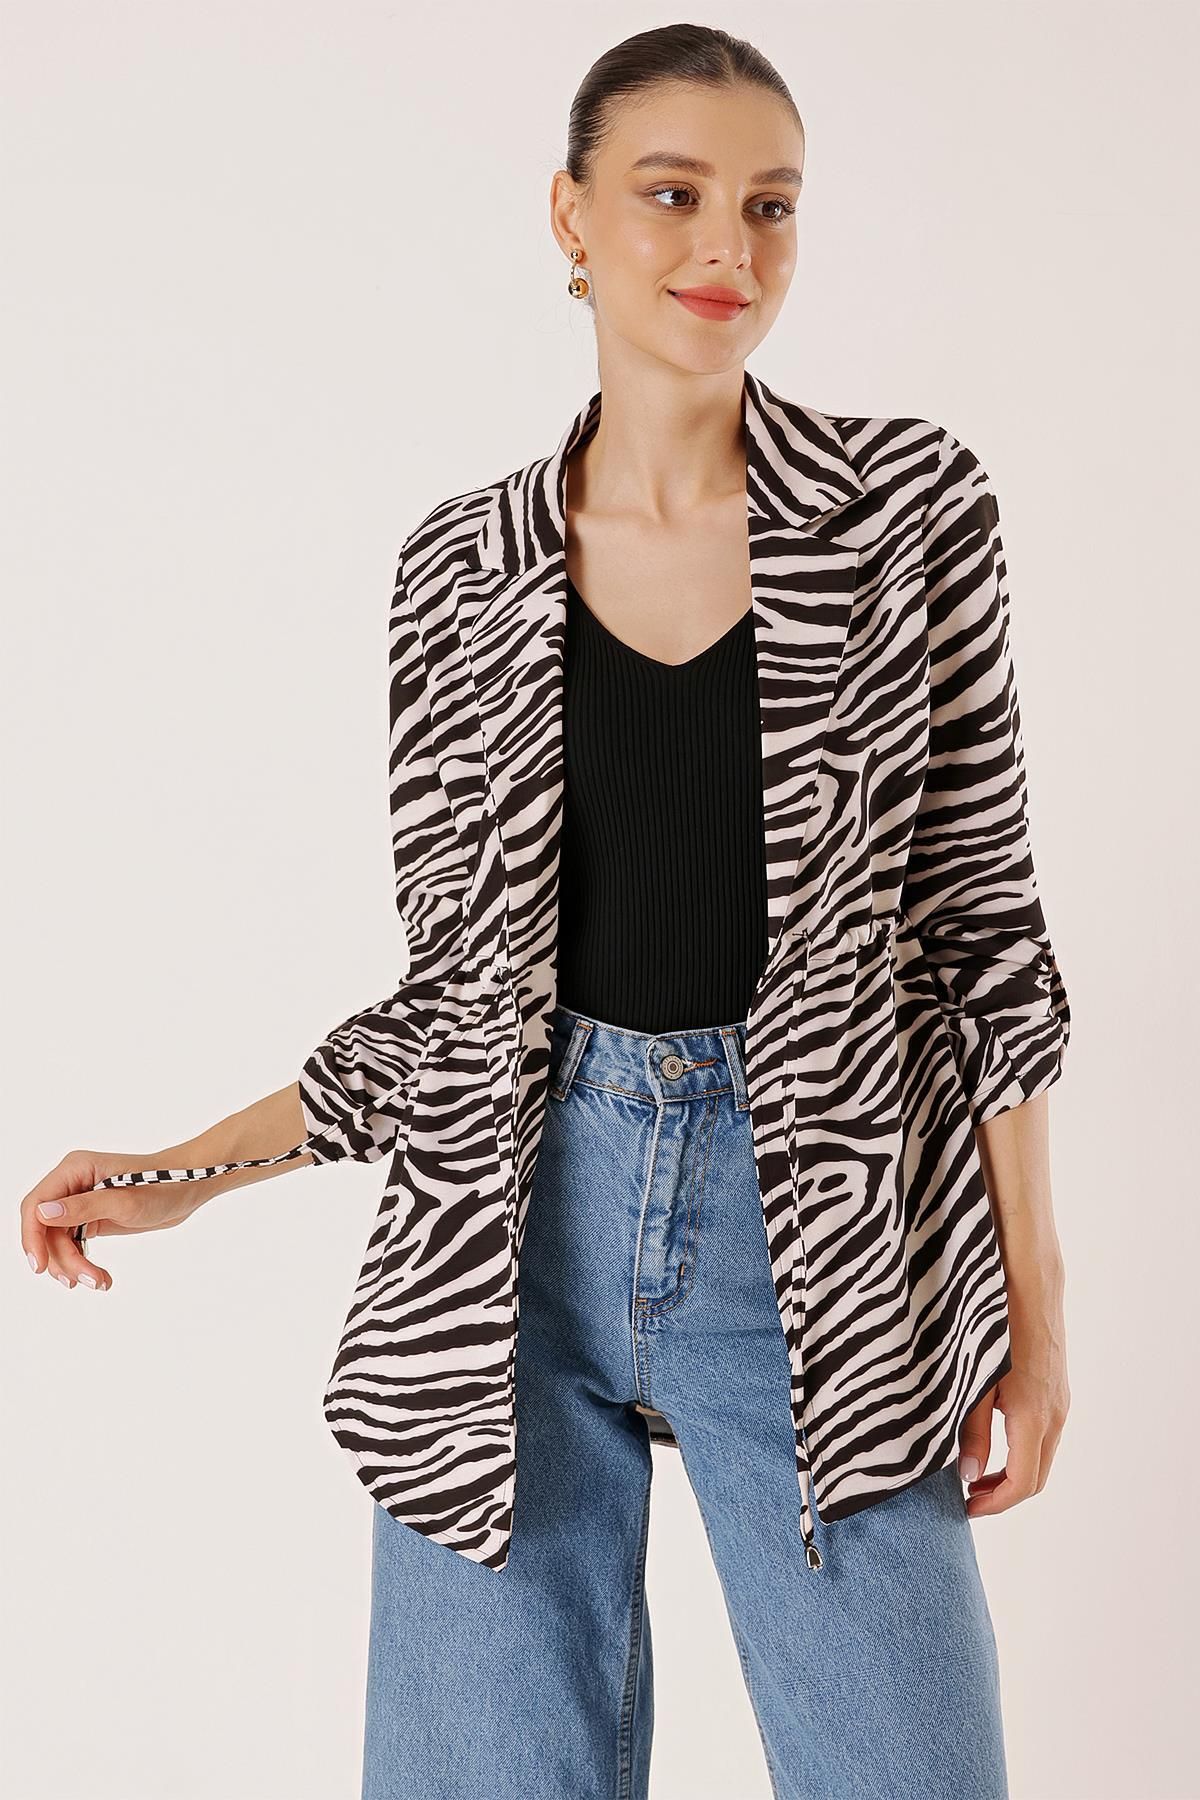 By Saygı Zebra Desenli Beli İpli Kol Katlamalı Ceket